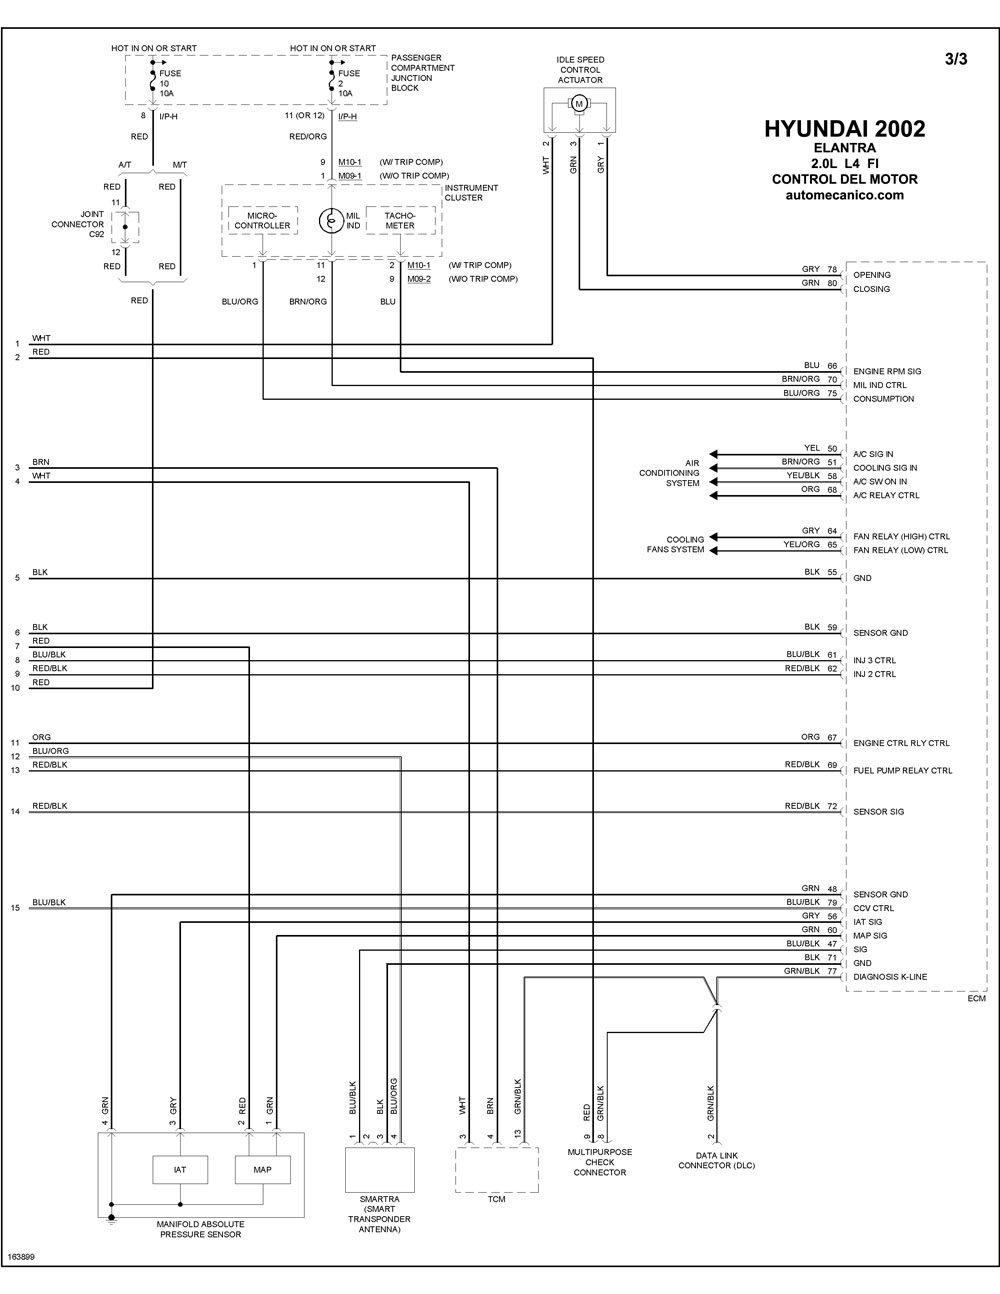 Hyundai - Diagramas control del motor 2002 - Graphics - Esquemas |  Vehiculos - Motores - Componentes | Mecanica automotriz